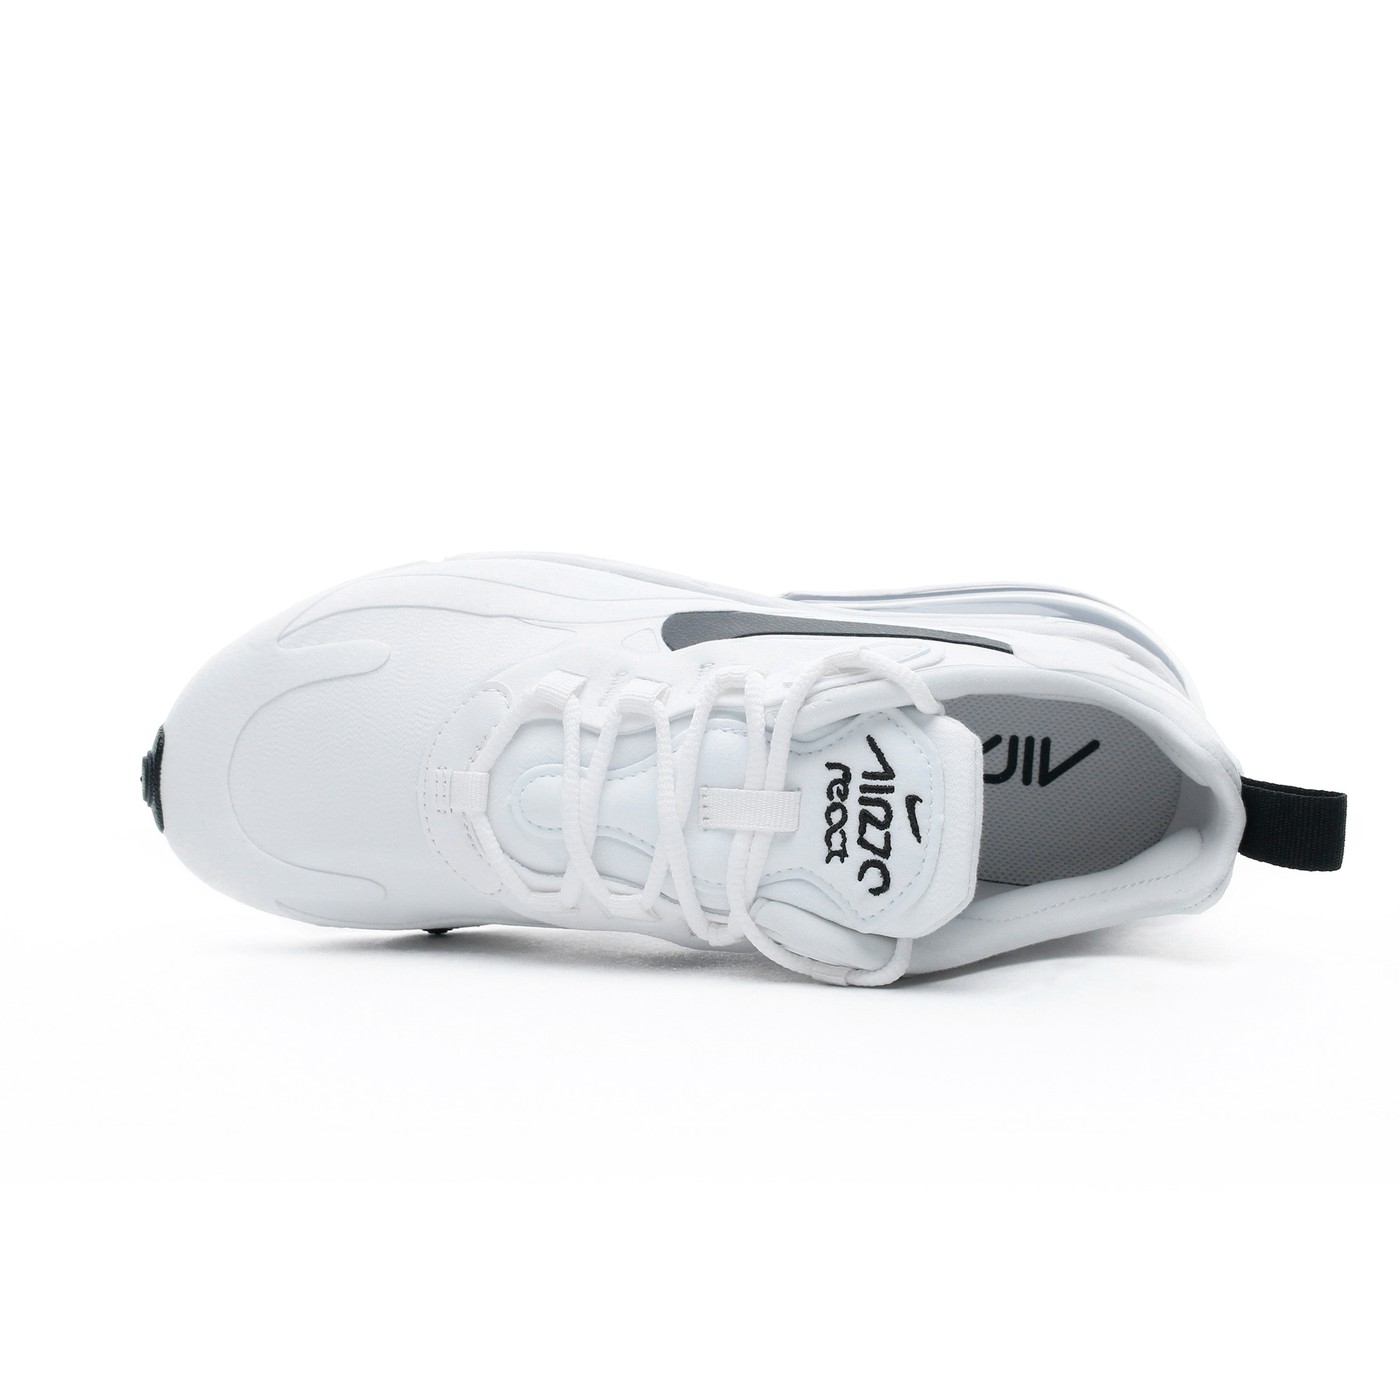 Çık dışarı Mordrin diktatör  Nike Air Max 270 React Kadın Beyaz Spor Ayakkabı CI3899 | Occasion